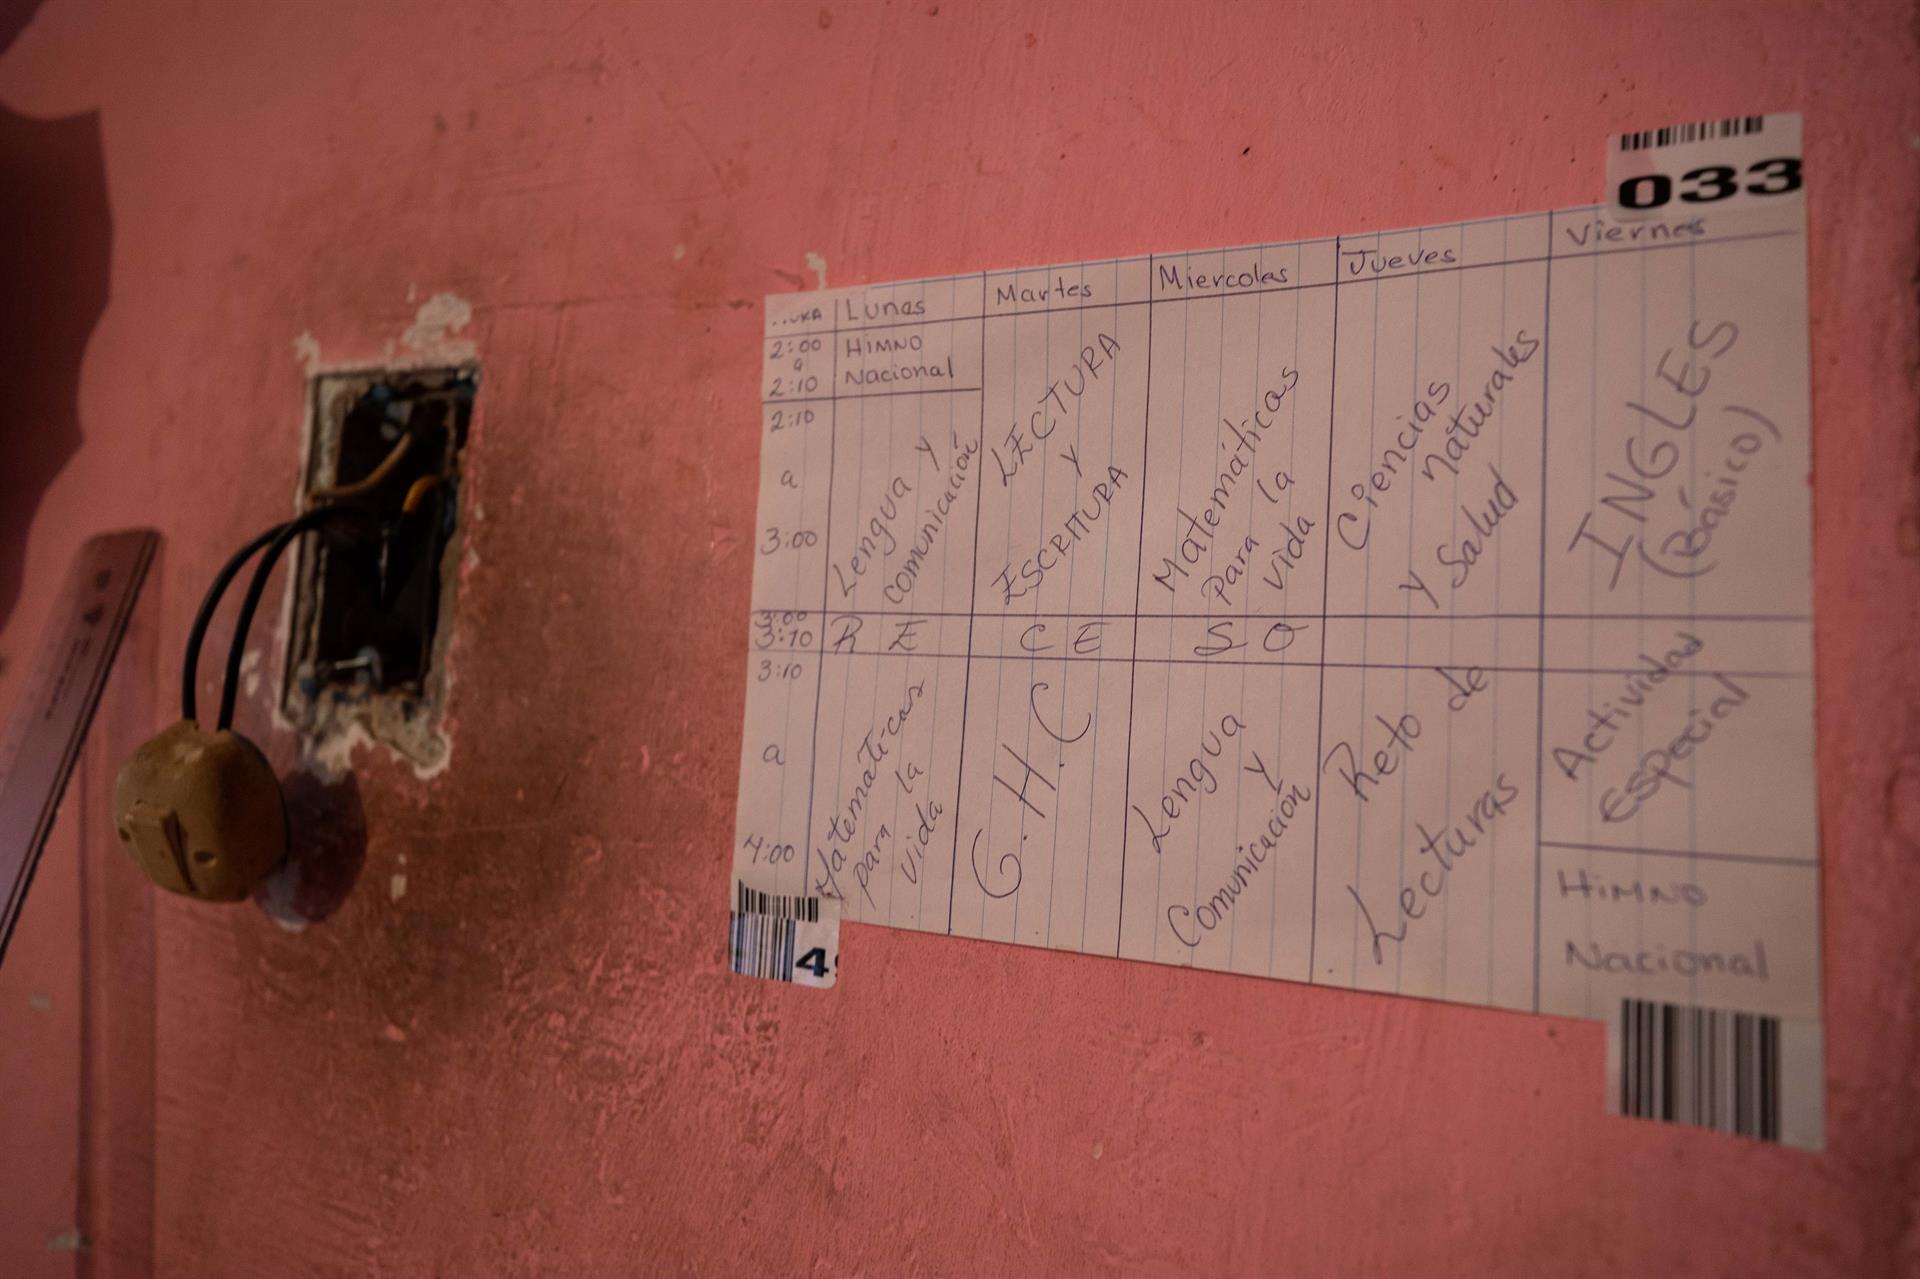 Las maestras de Petare que convierten sus casas en escuelas ante la suspensión de clases por la pandemia